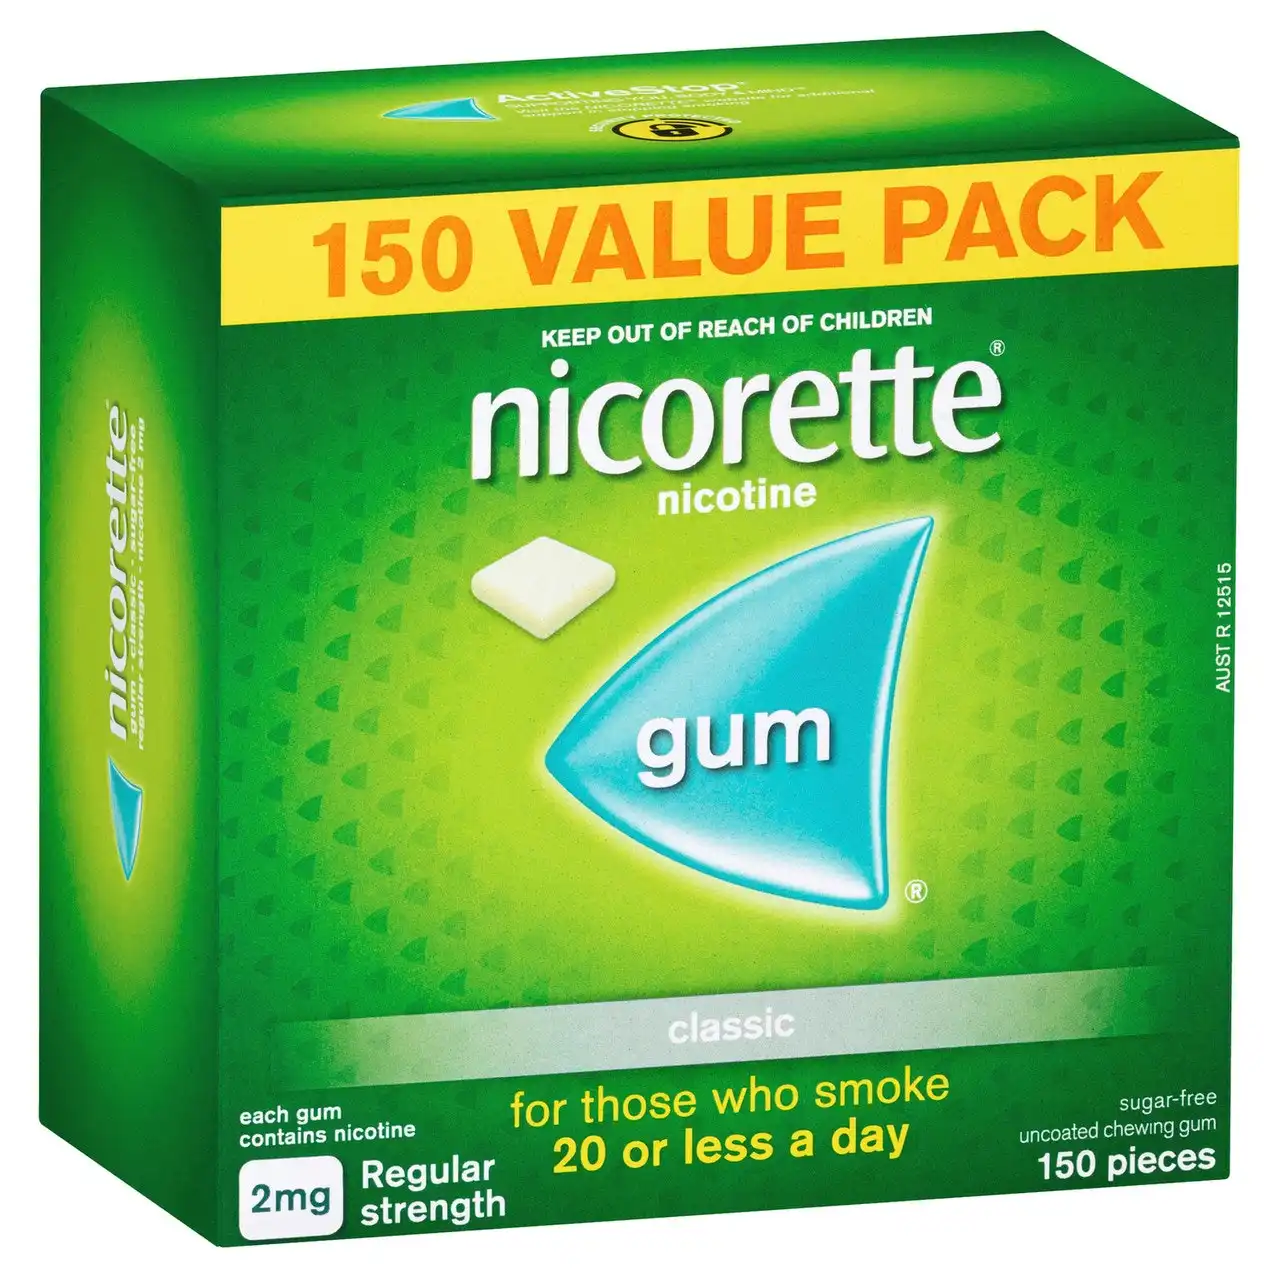 Nicorette Quit Smoking Regular Strength Nicotine Gum Classic 150 Pack